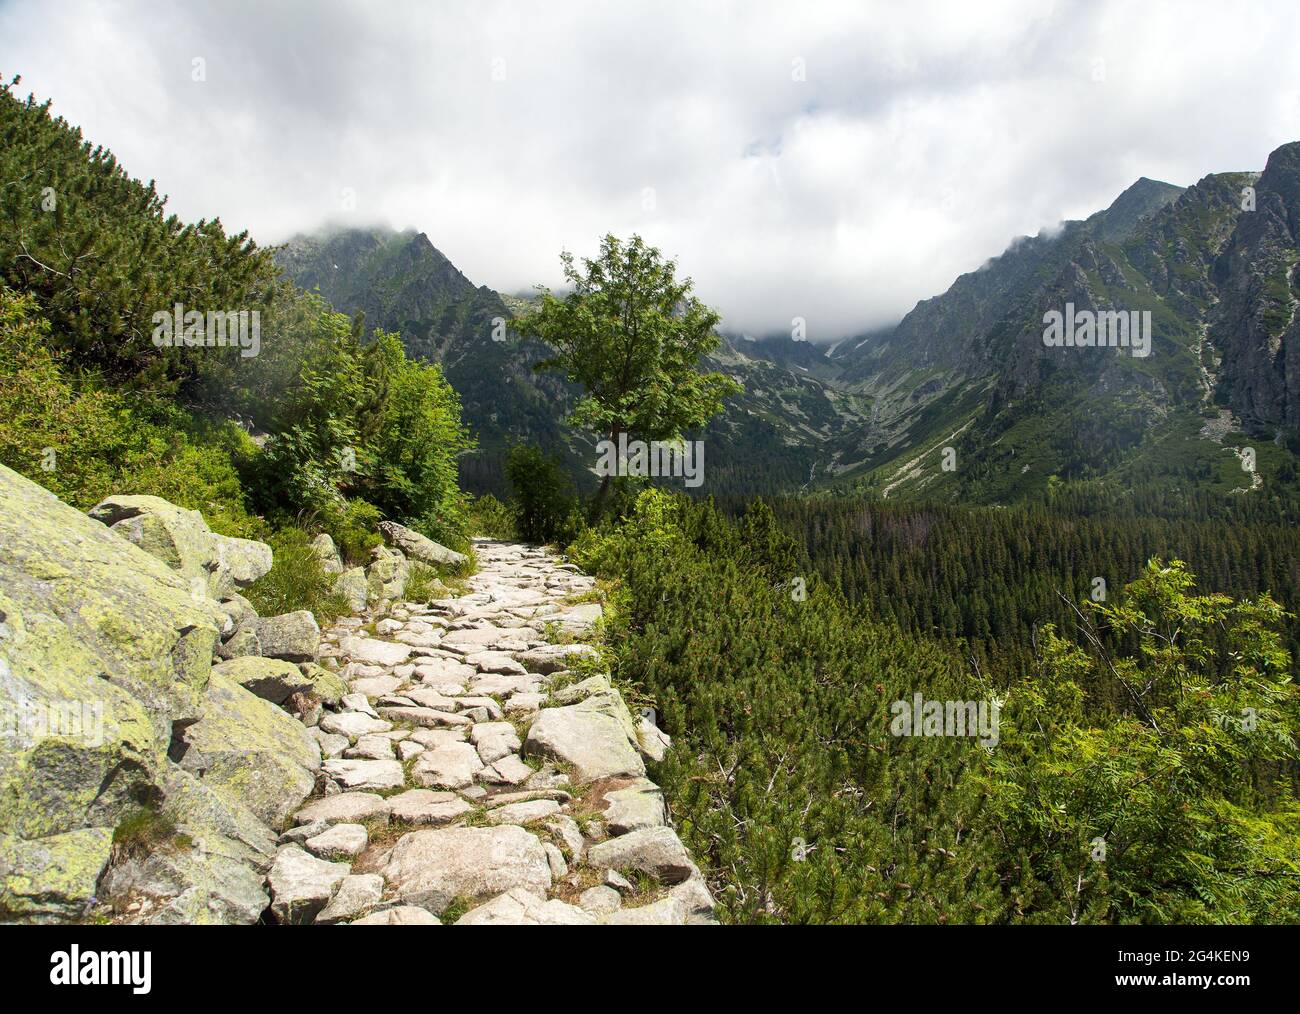 Sentier de montagne en pierre dans les montagnes Vysoke Tatry ou High Tatras, Carpathia, Slovaquie Banque D'Images